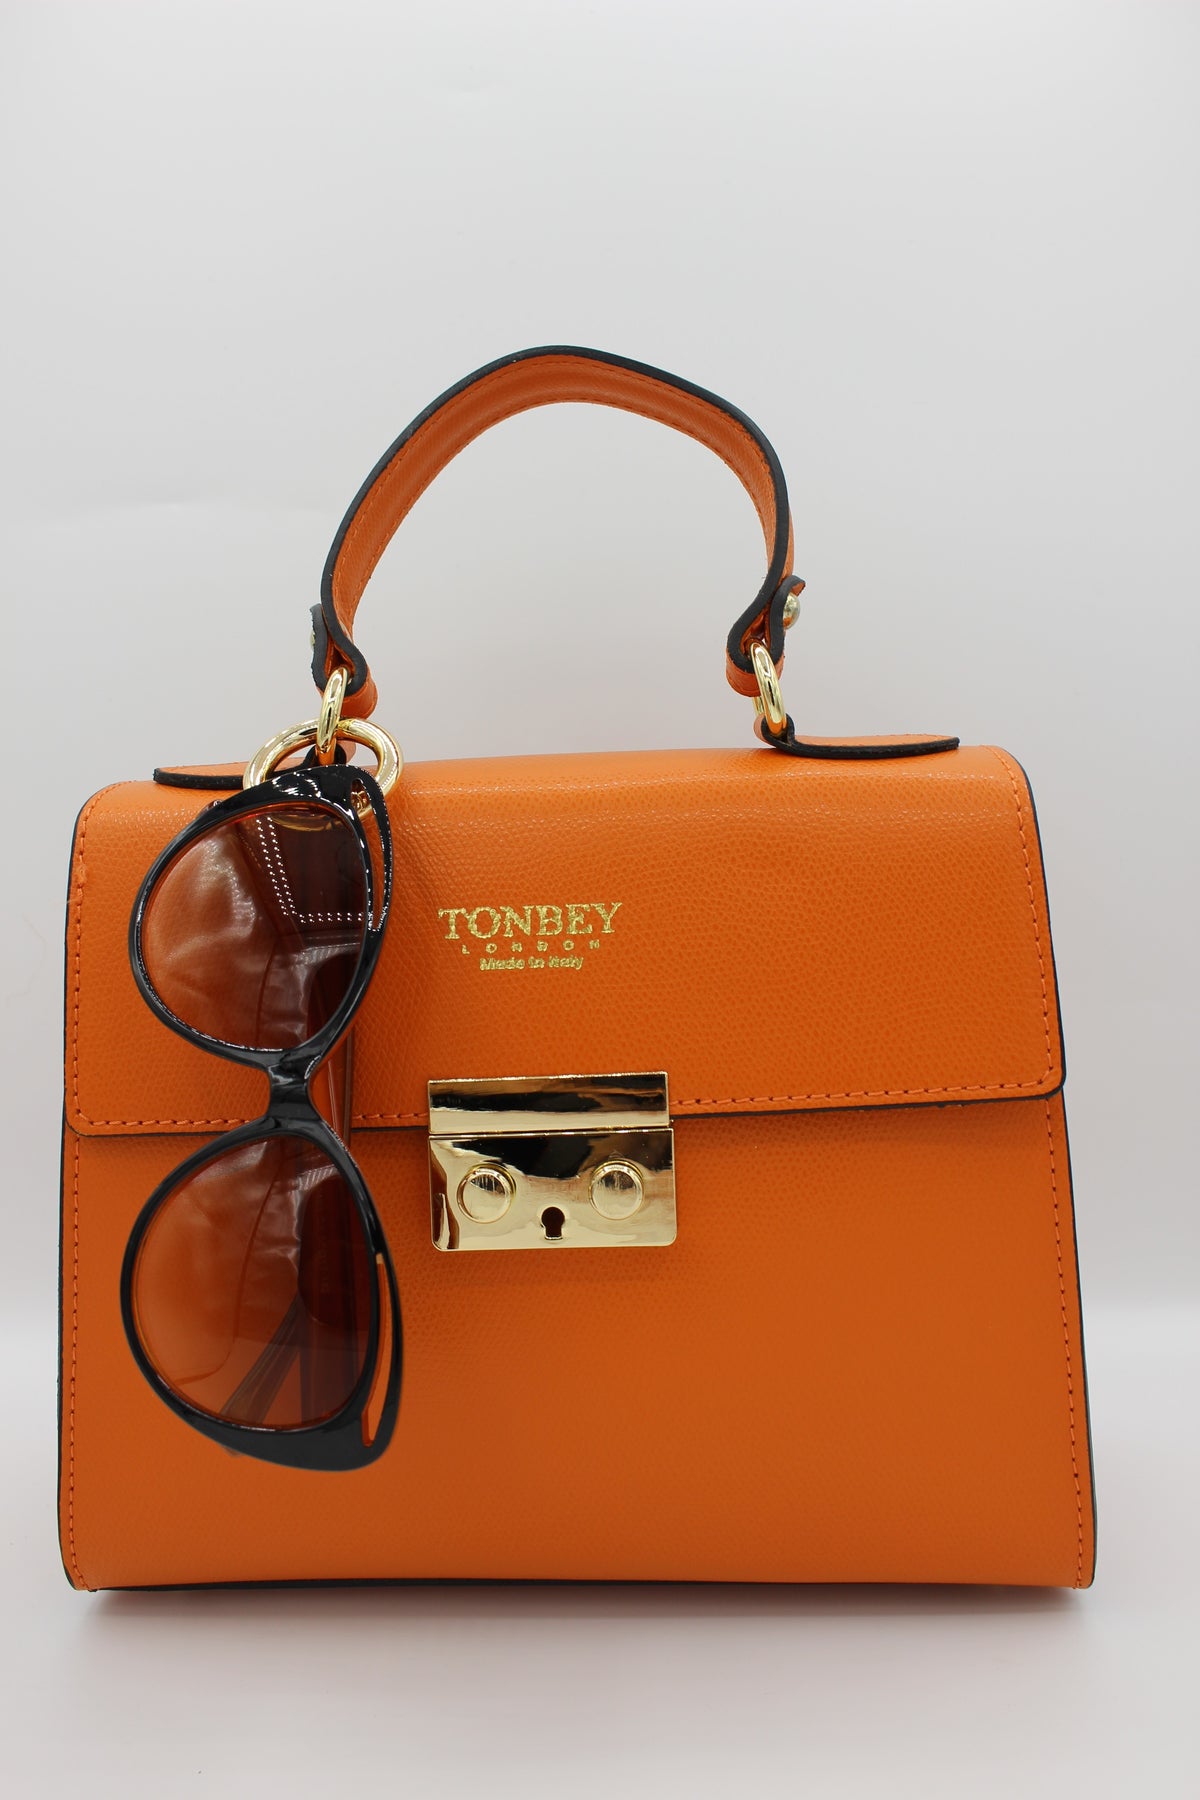 Orange Kelly Bovine Leather bag with Tonbey Cat-eye glasses